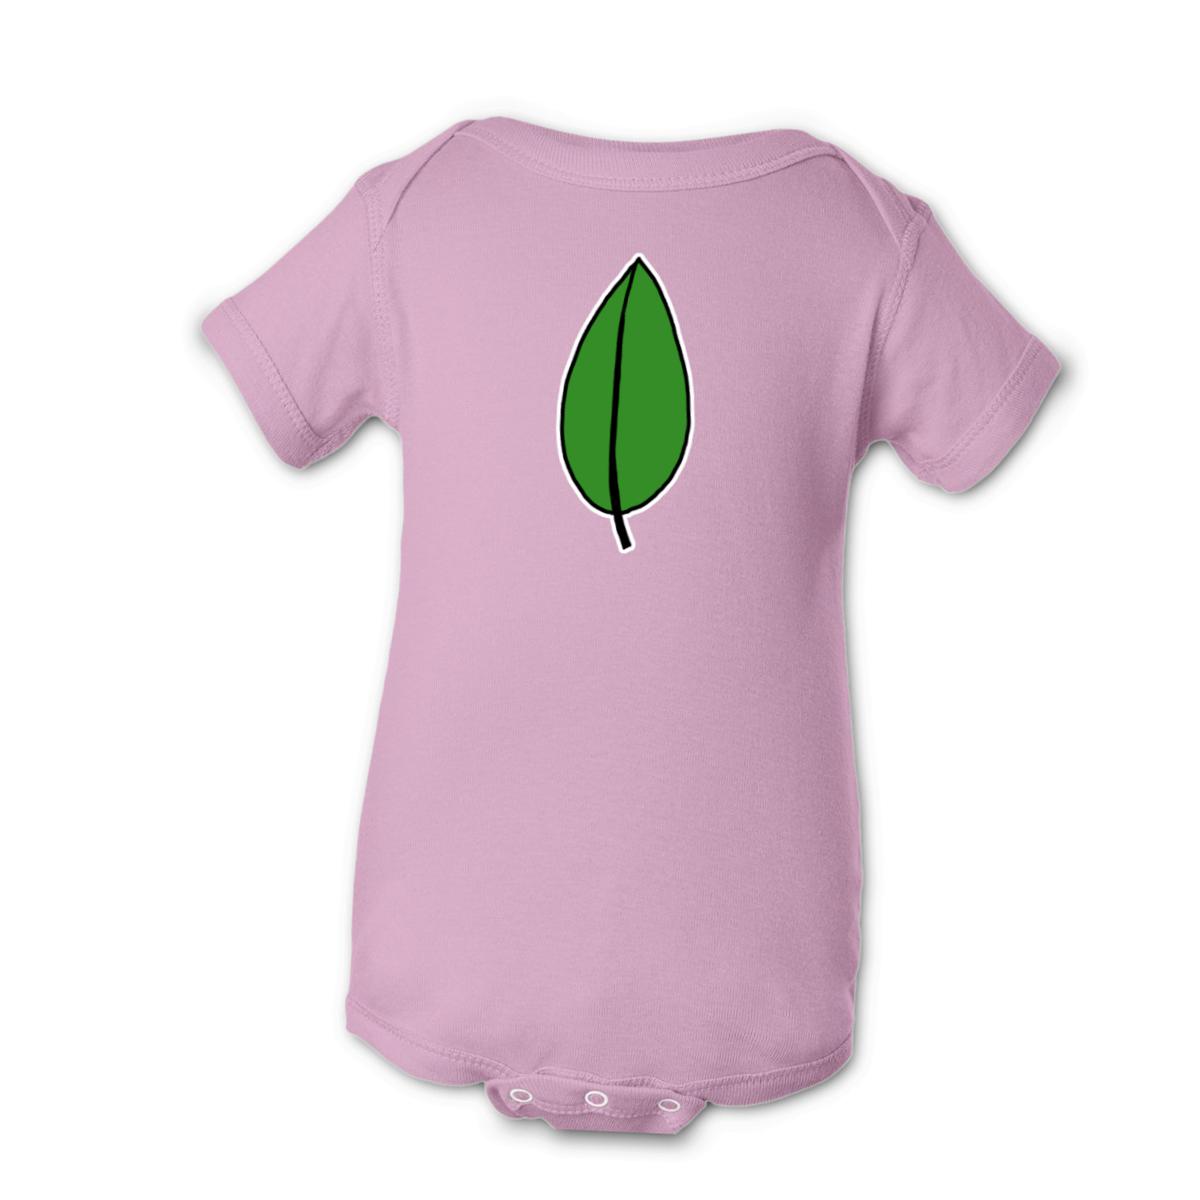 Olive Leaf Onesie 18M pink